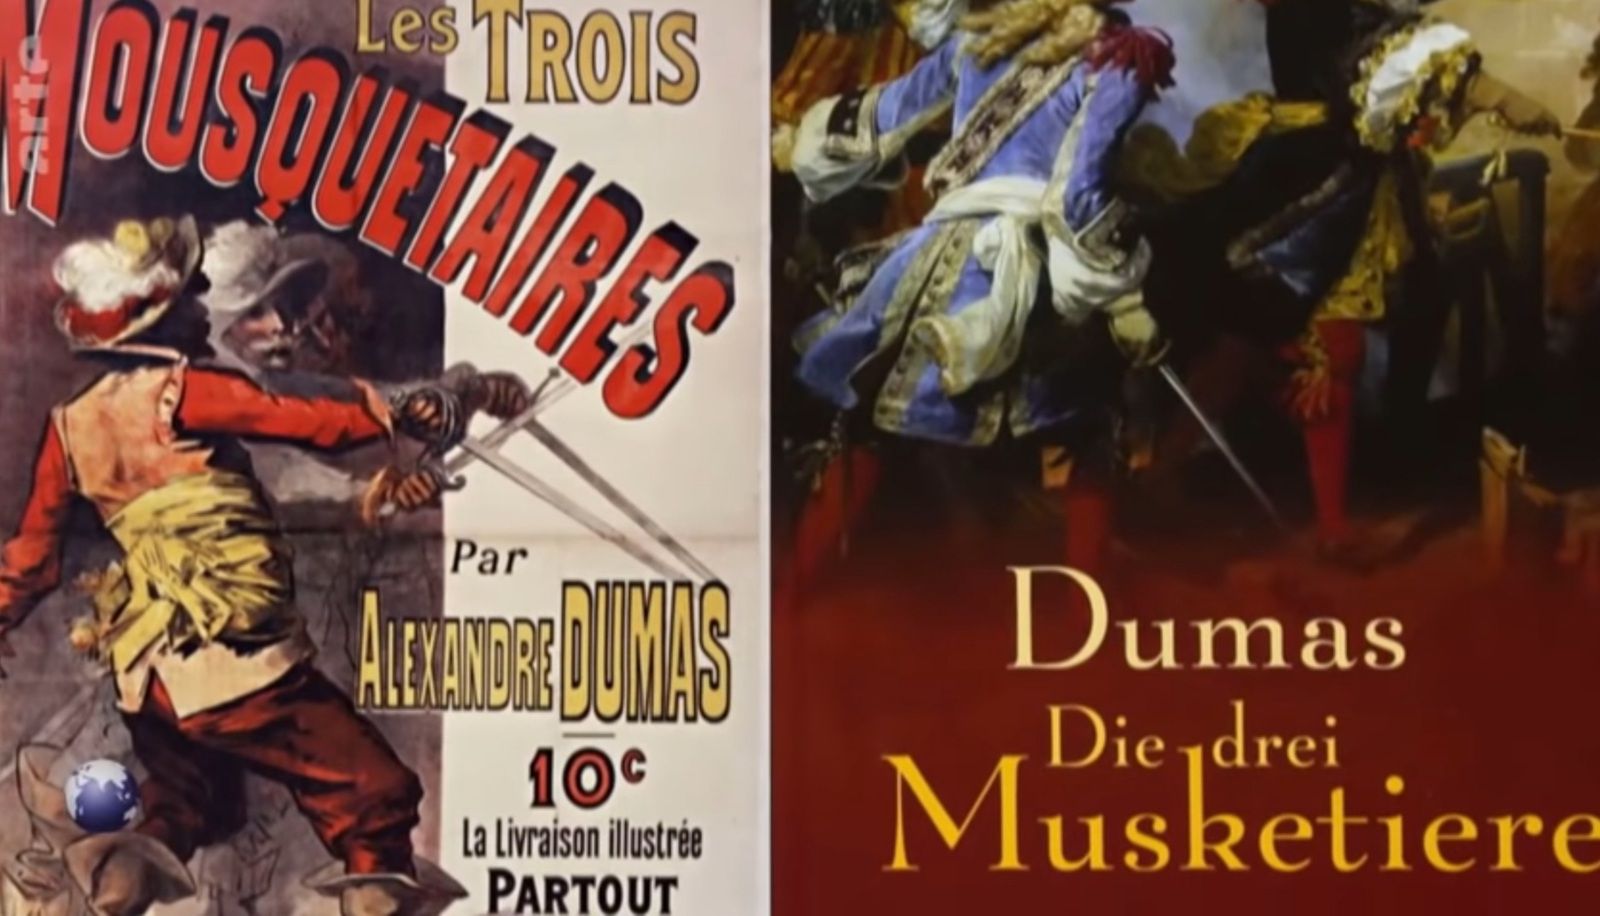 «Alexandre DUMAS (1802-1870), maître du roman historique, un mousquetaire, un d’Artagnan de l’égalité réelle» par Amadou Bal BA - http://baamadou.over-blog.fr/